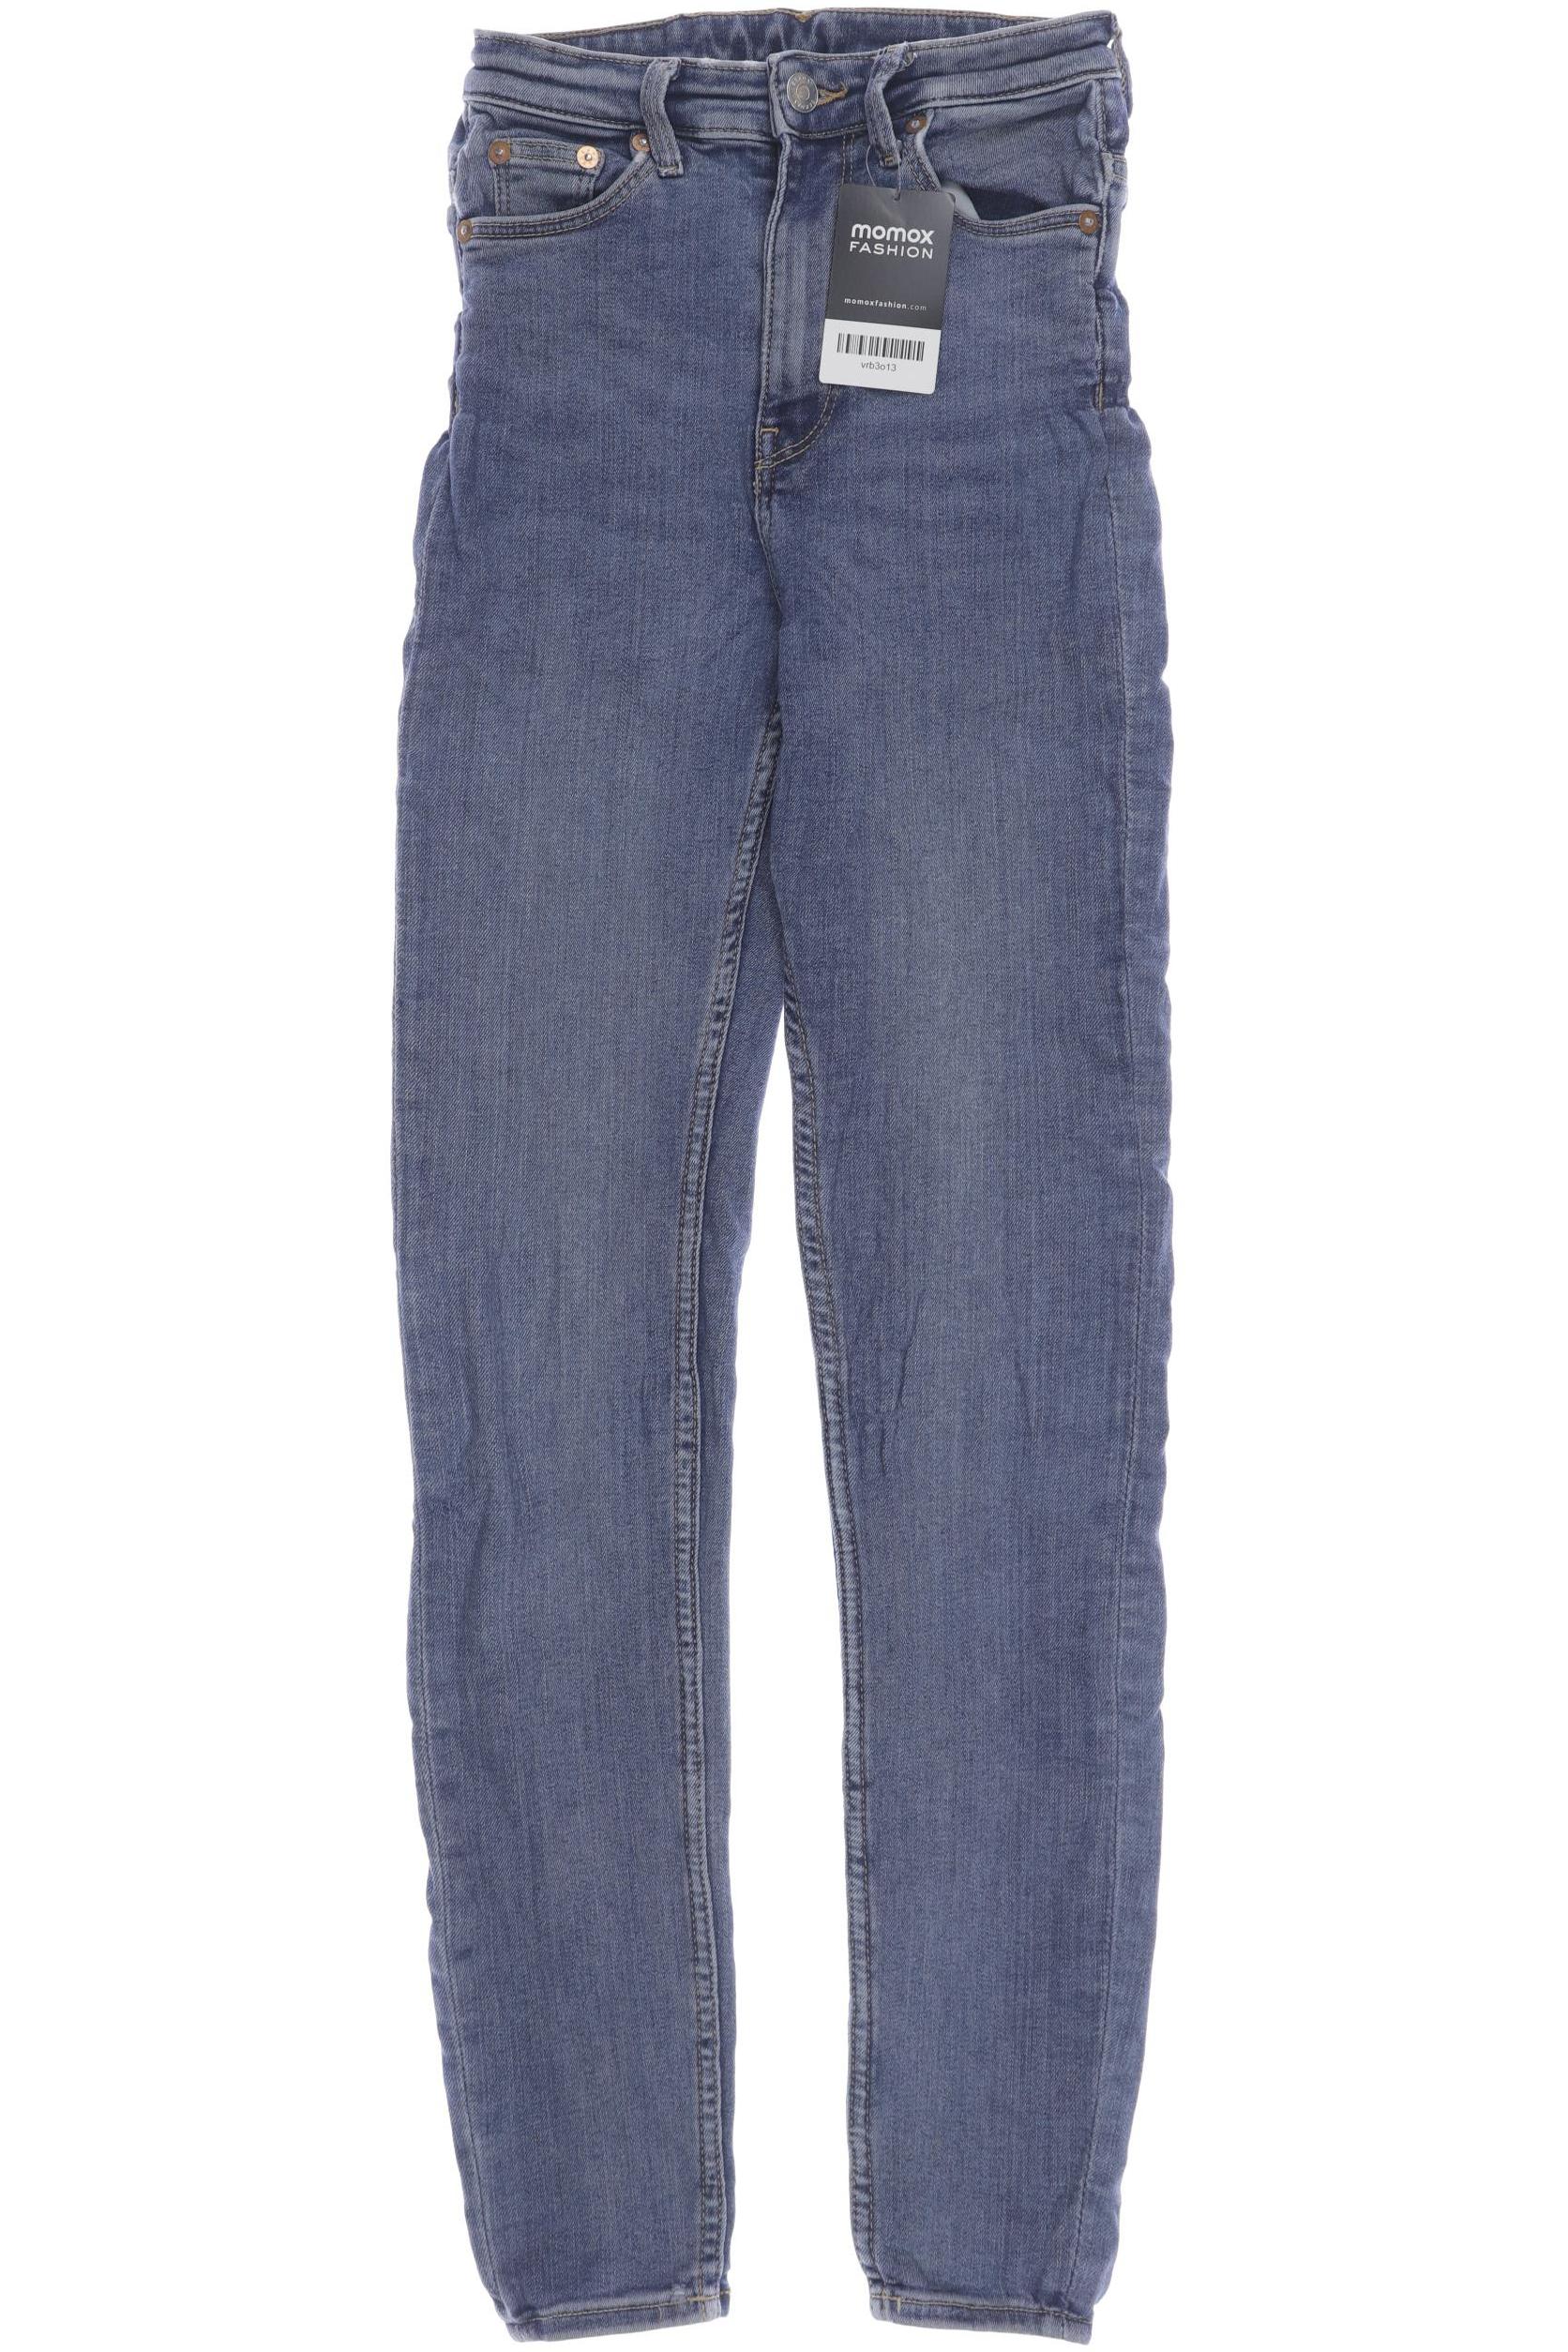 Weekday Damen Jeans, blau, Gr. 30 von Weekday